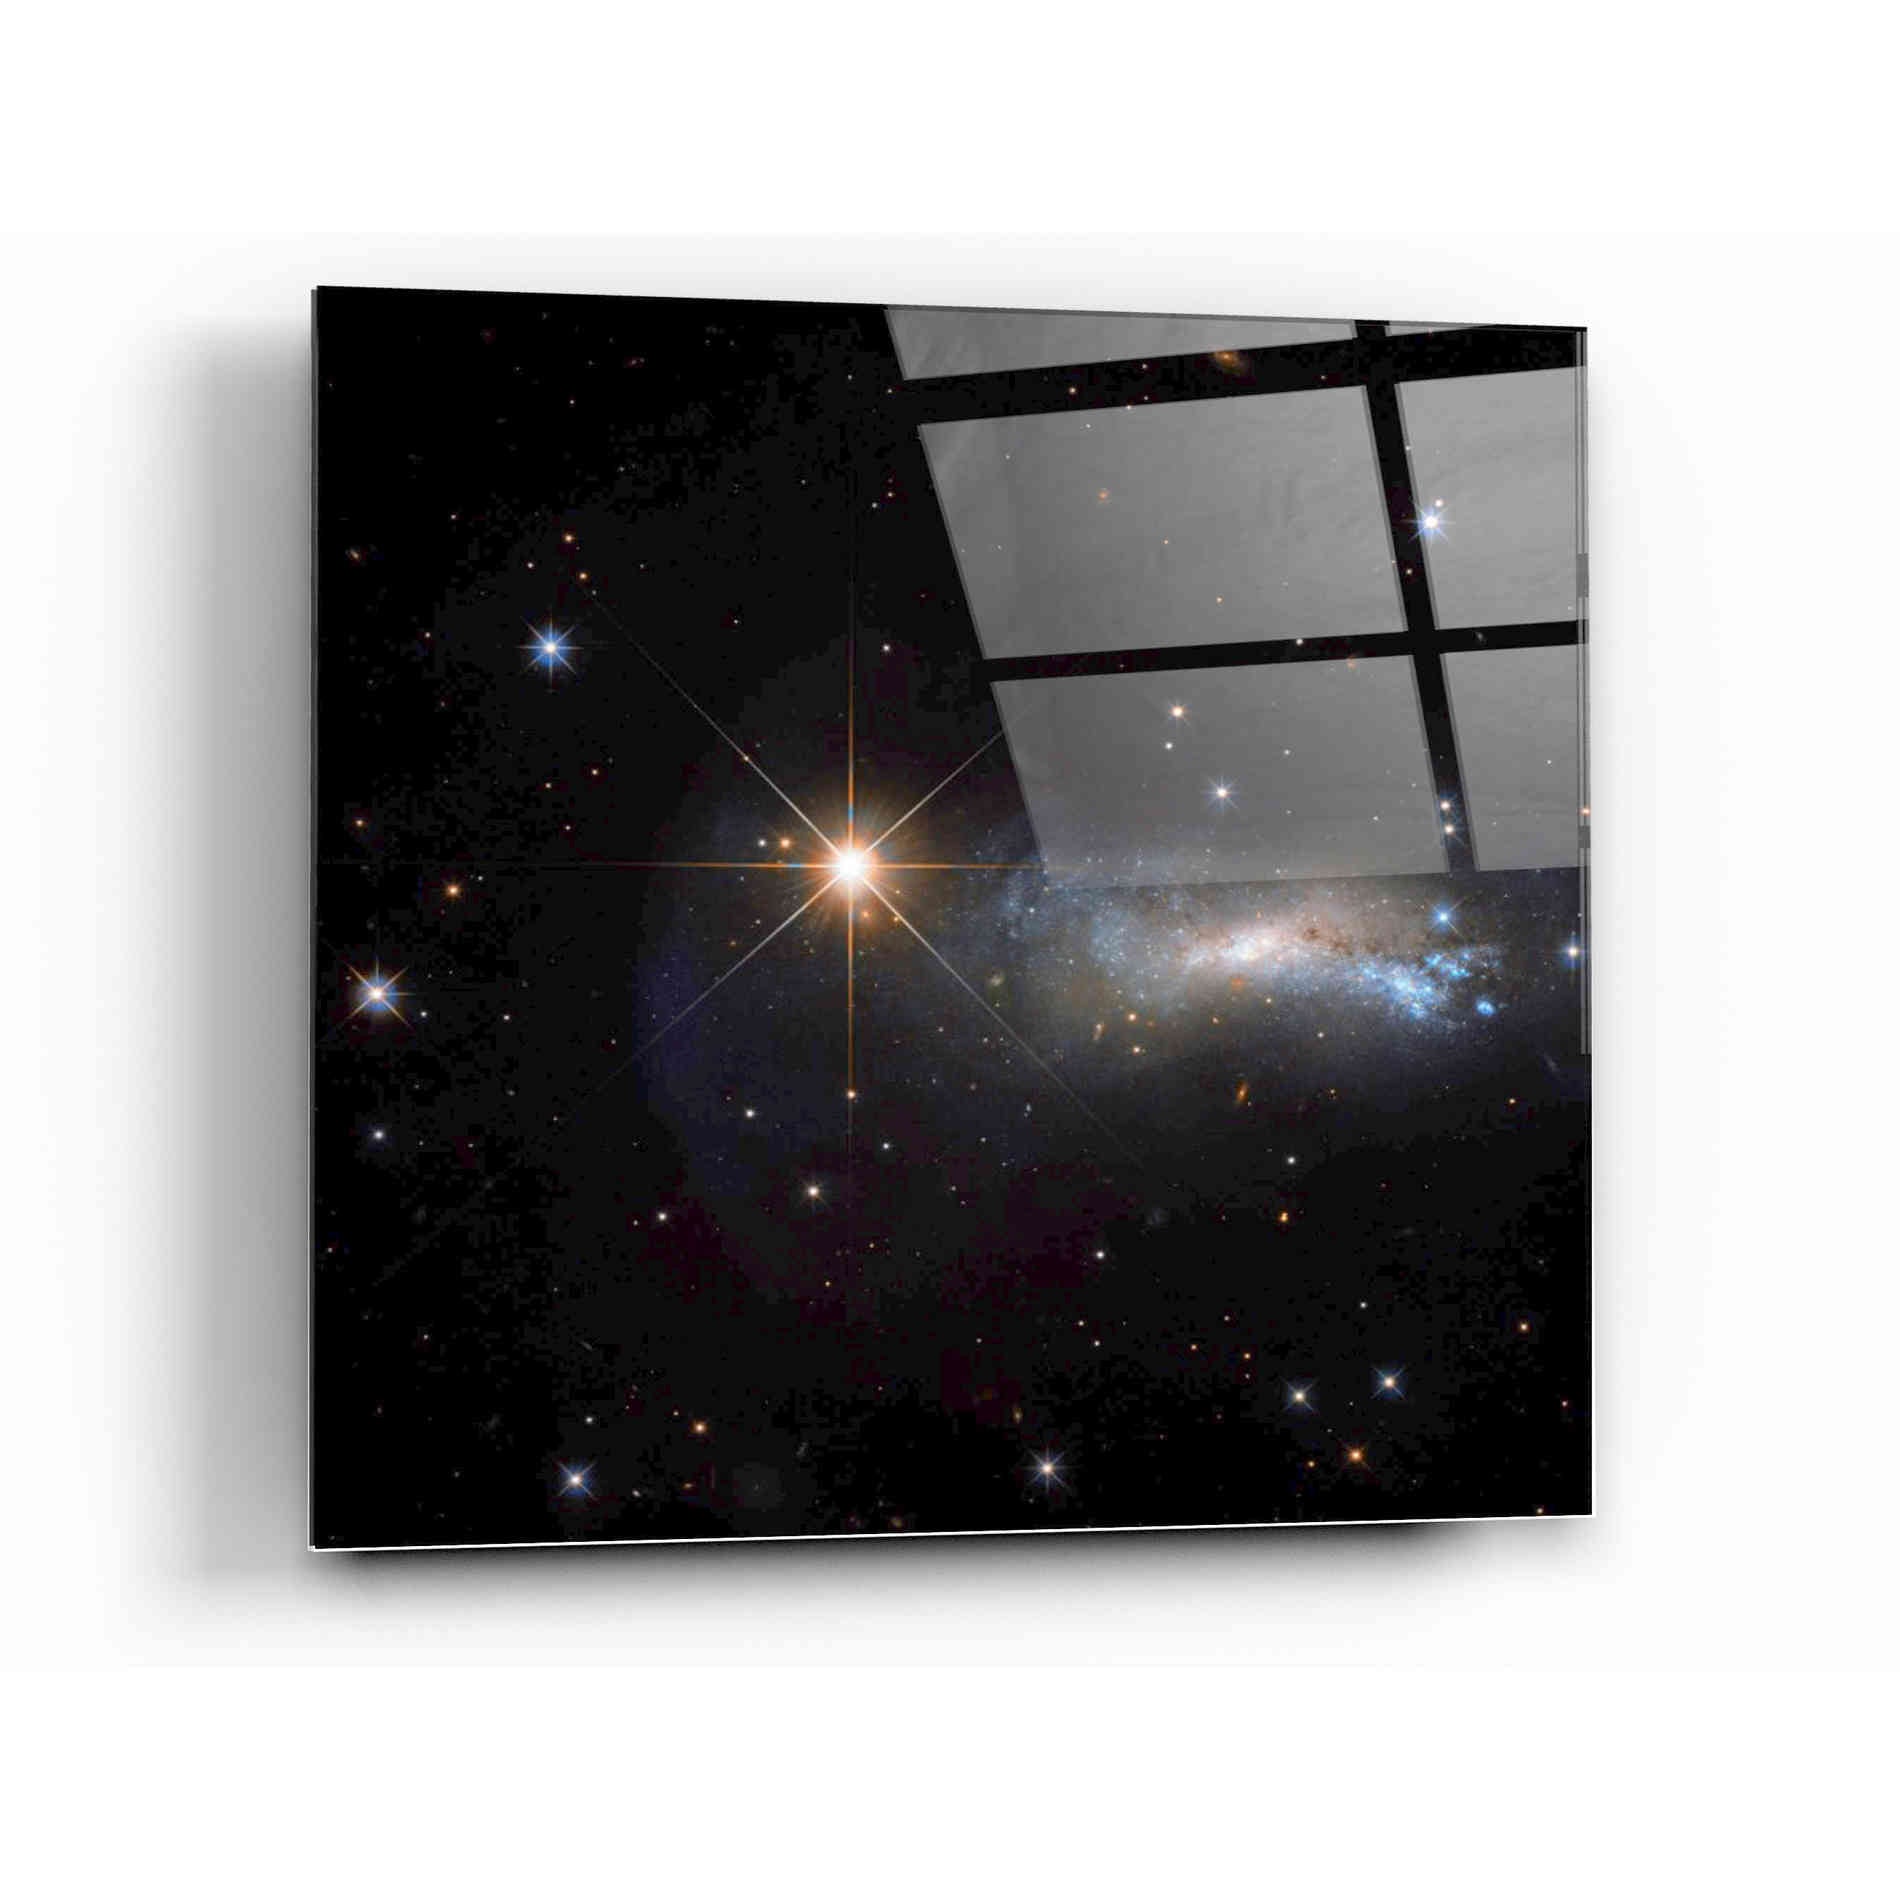 Epic Art "Outshine" Hubble Space Telescope Acrylic Glass Wall Art,12 x 12